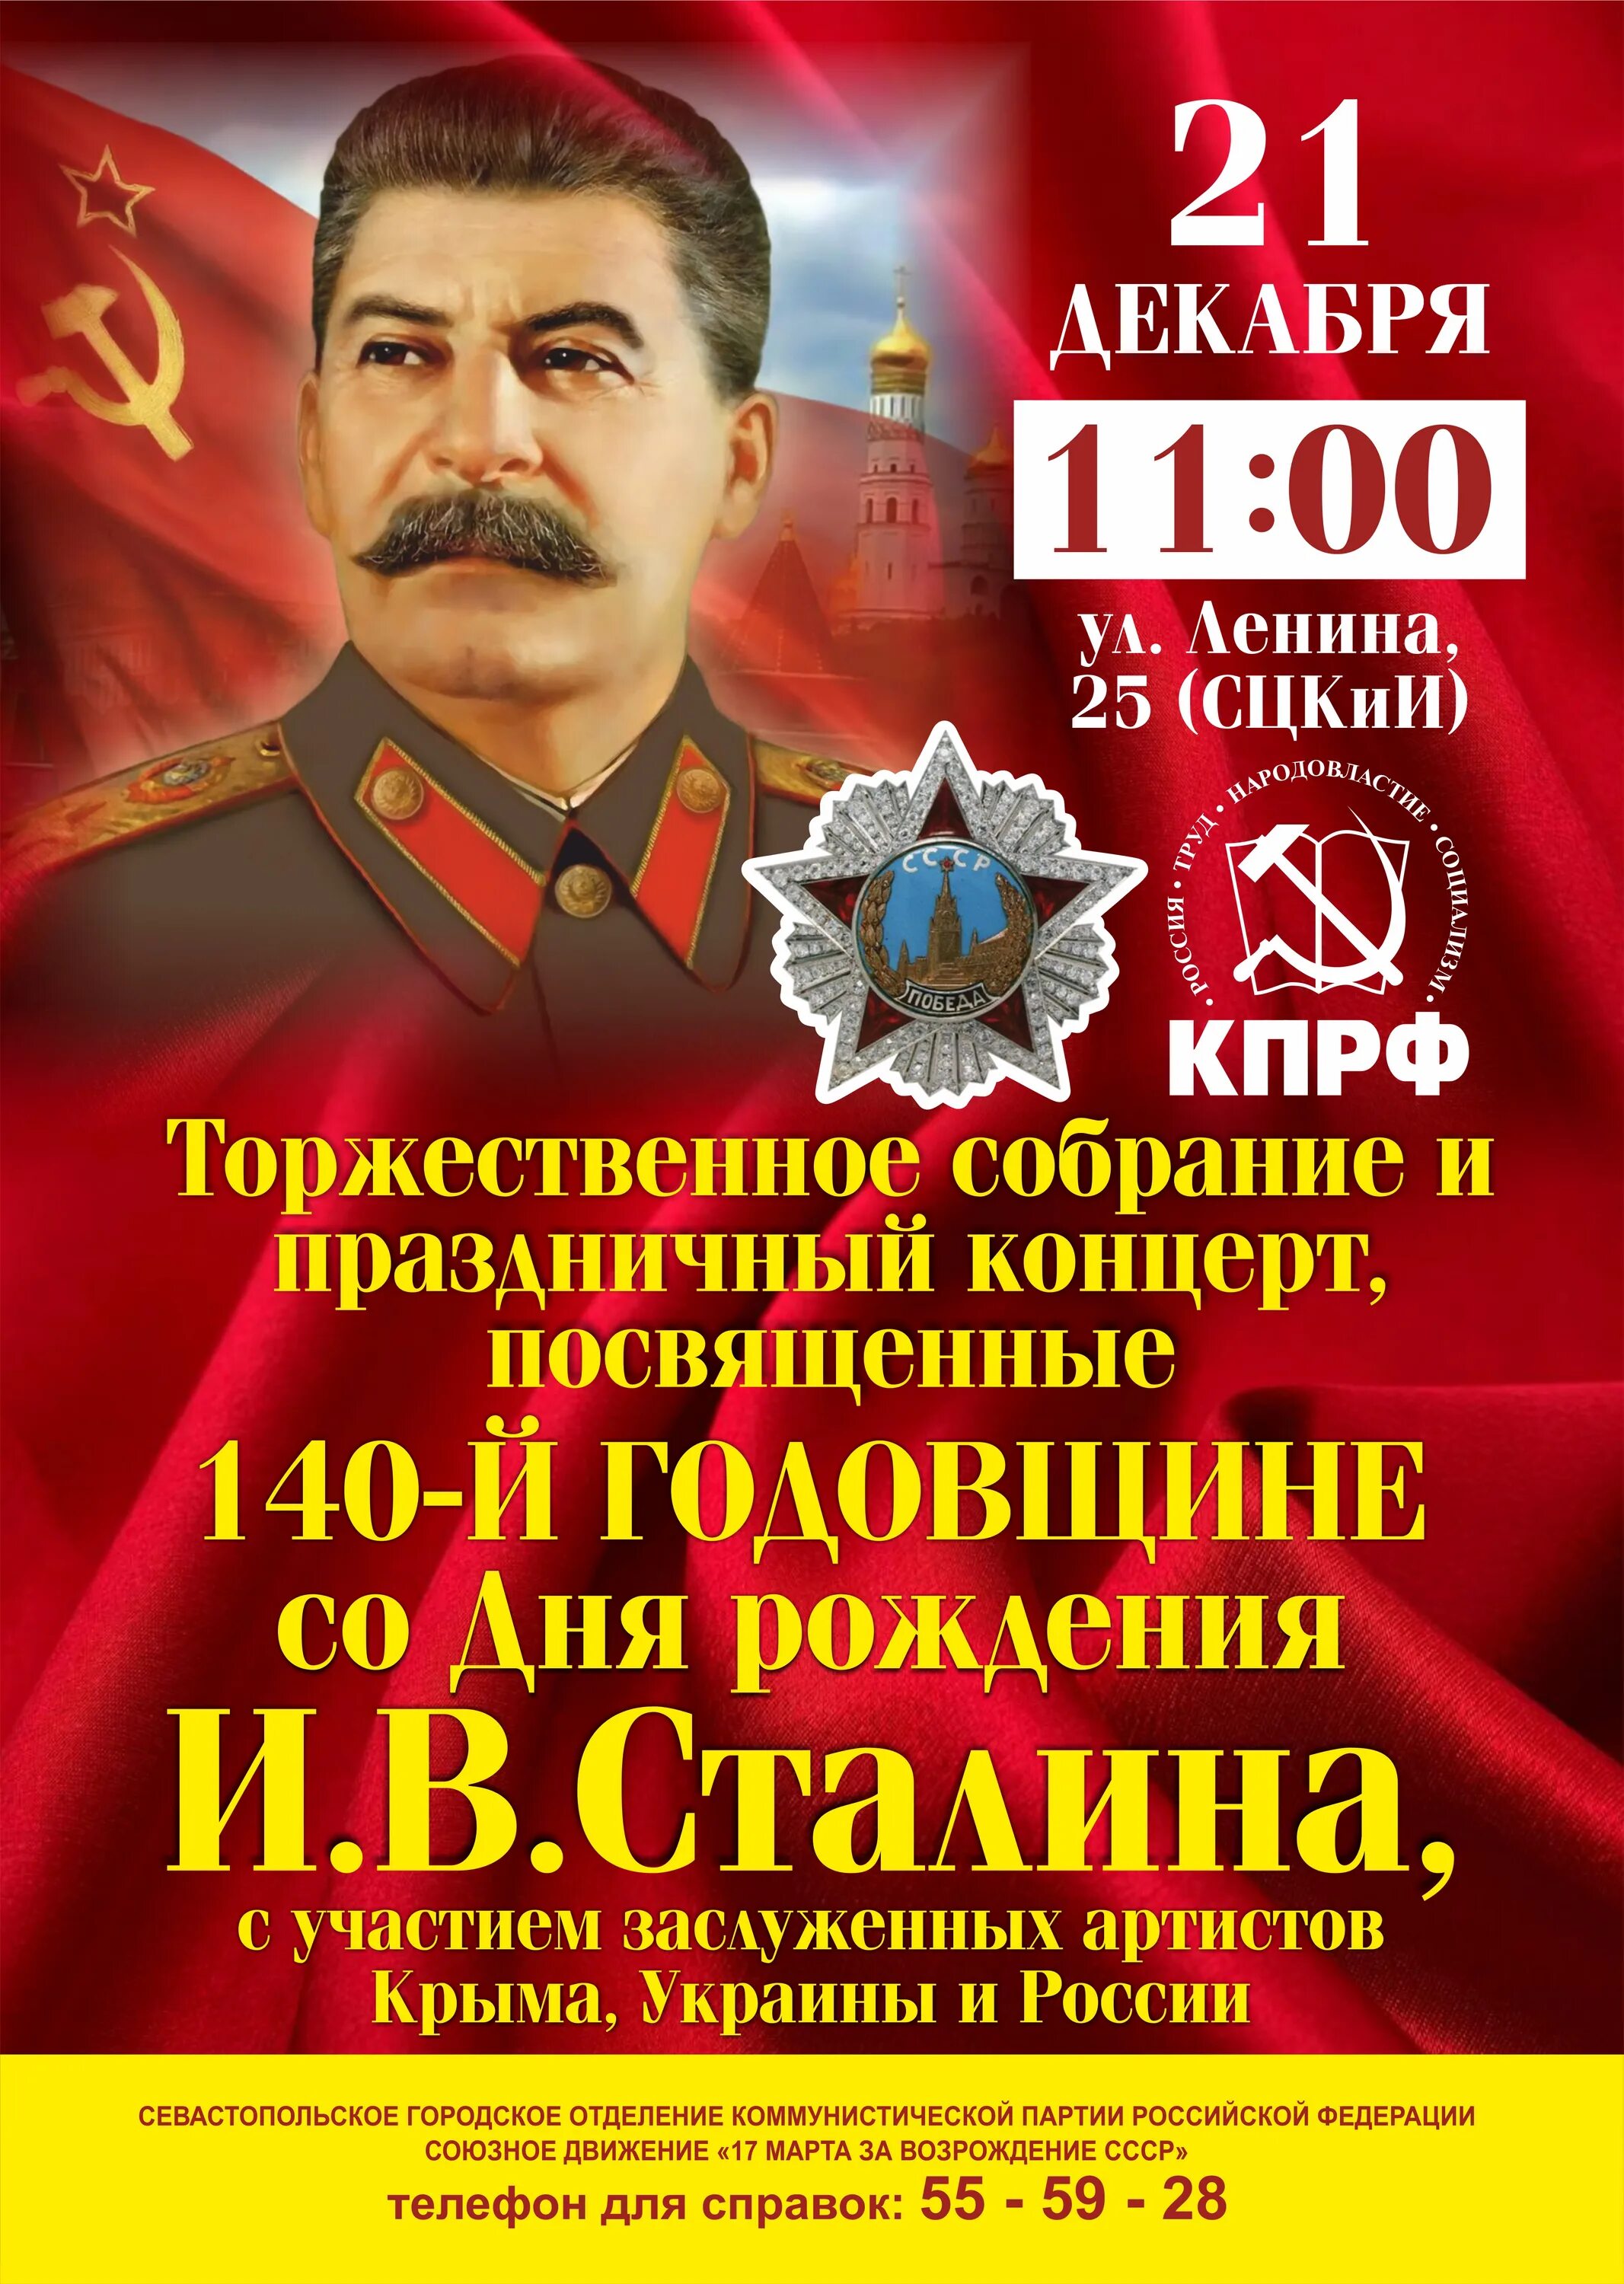 День рождения сталина. День рождения Сталина открытки. День рождения Сталина Дата. День рождения Сталина 21 декабря.